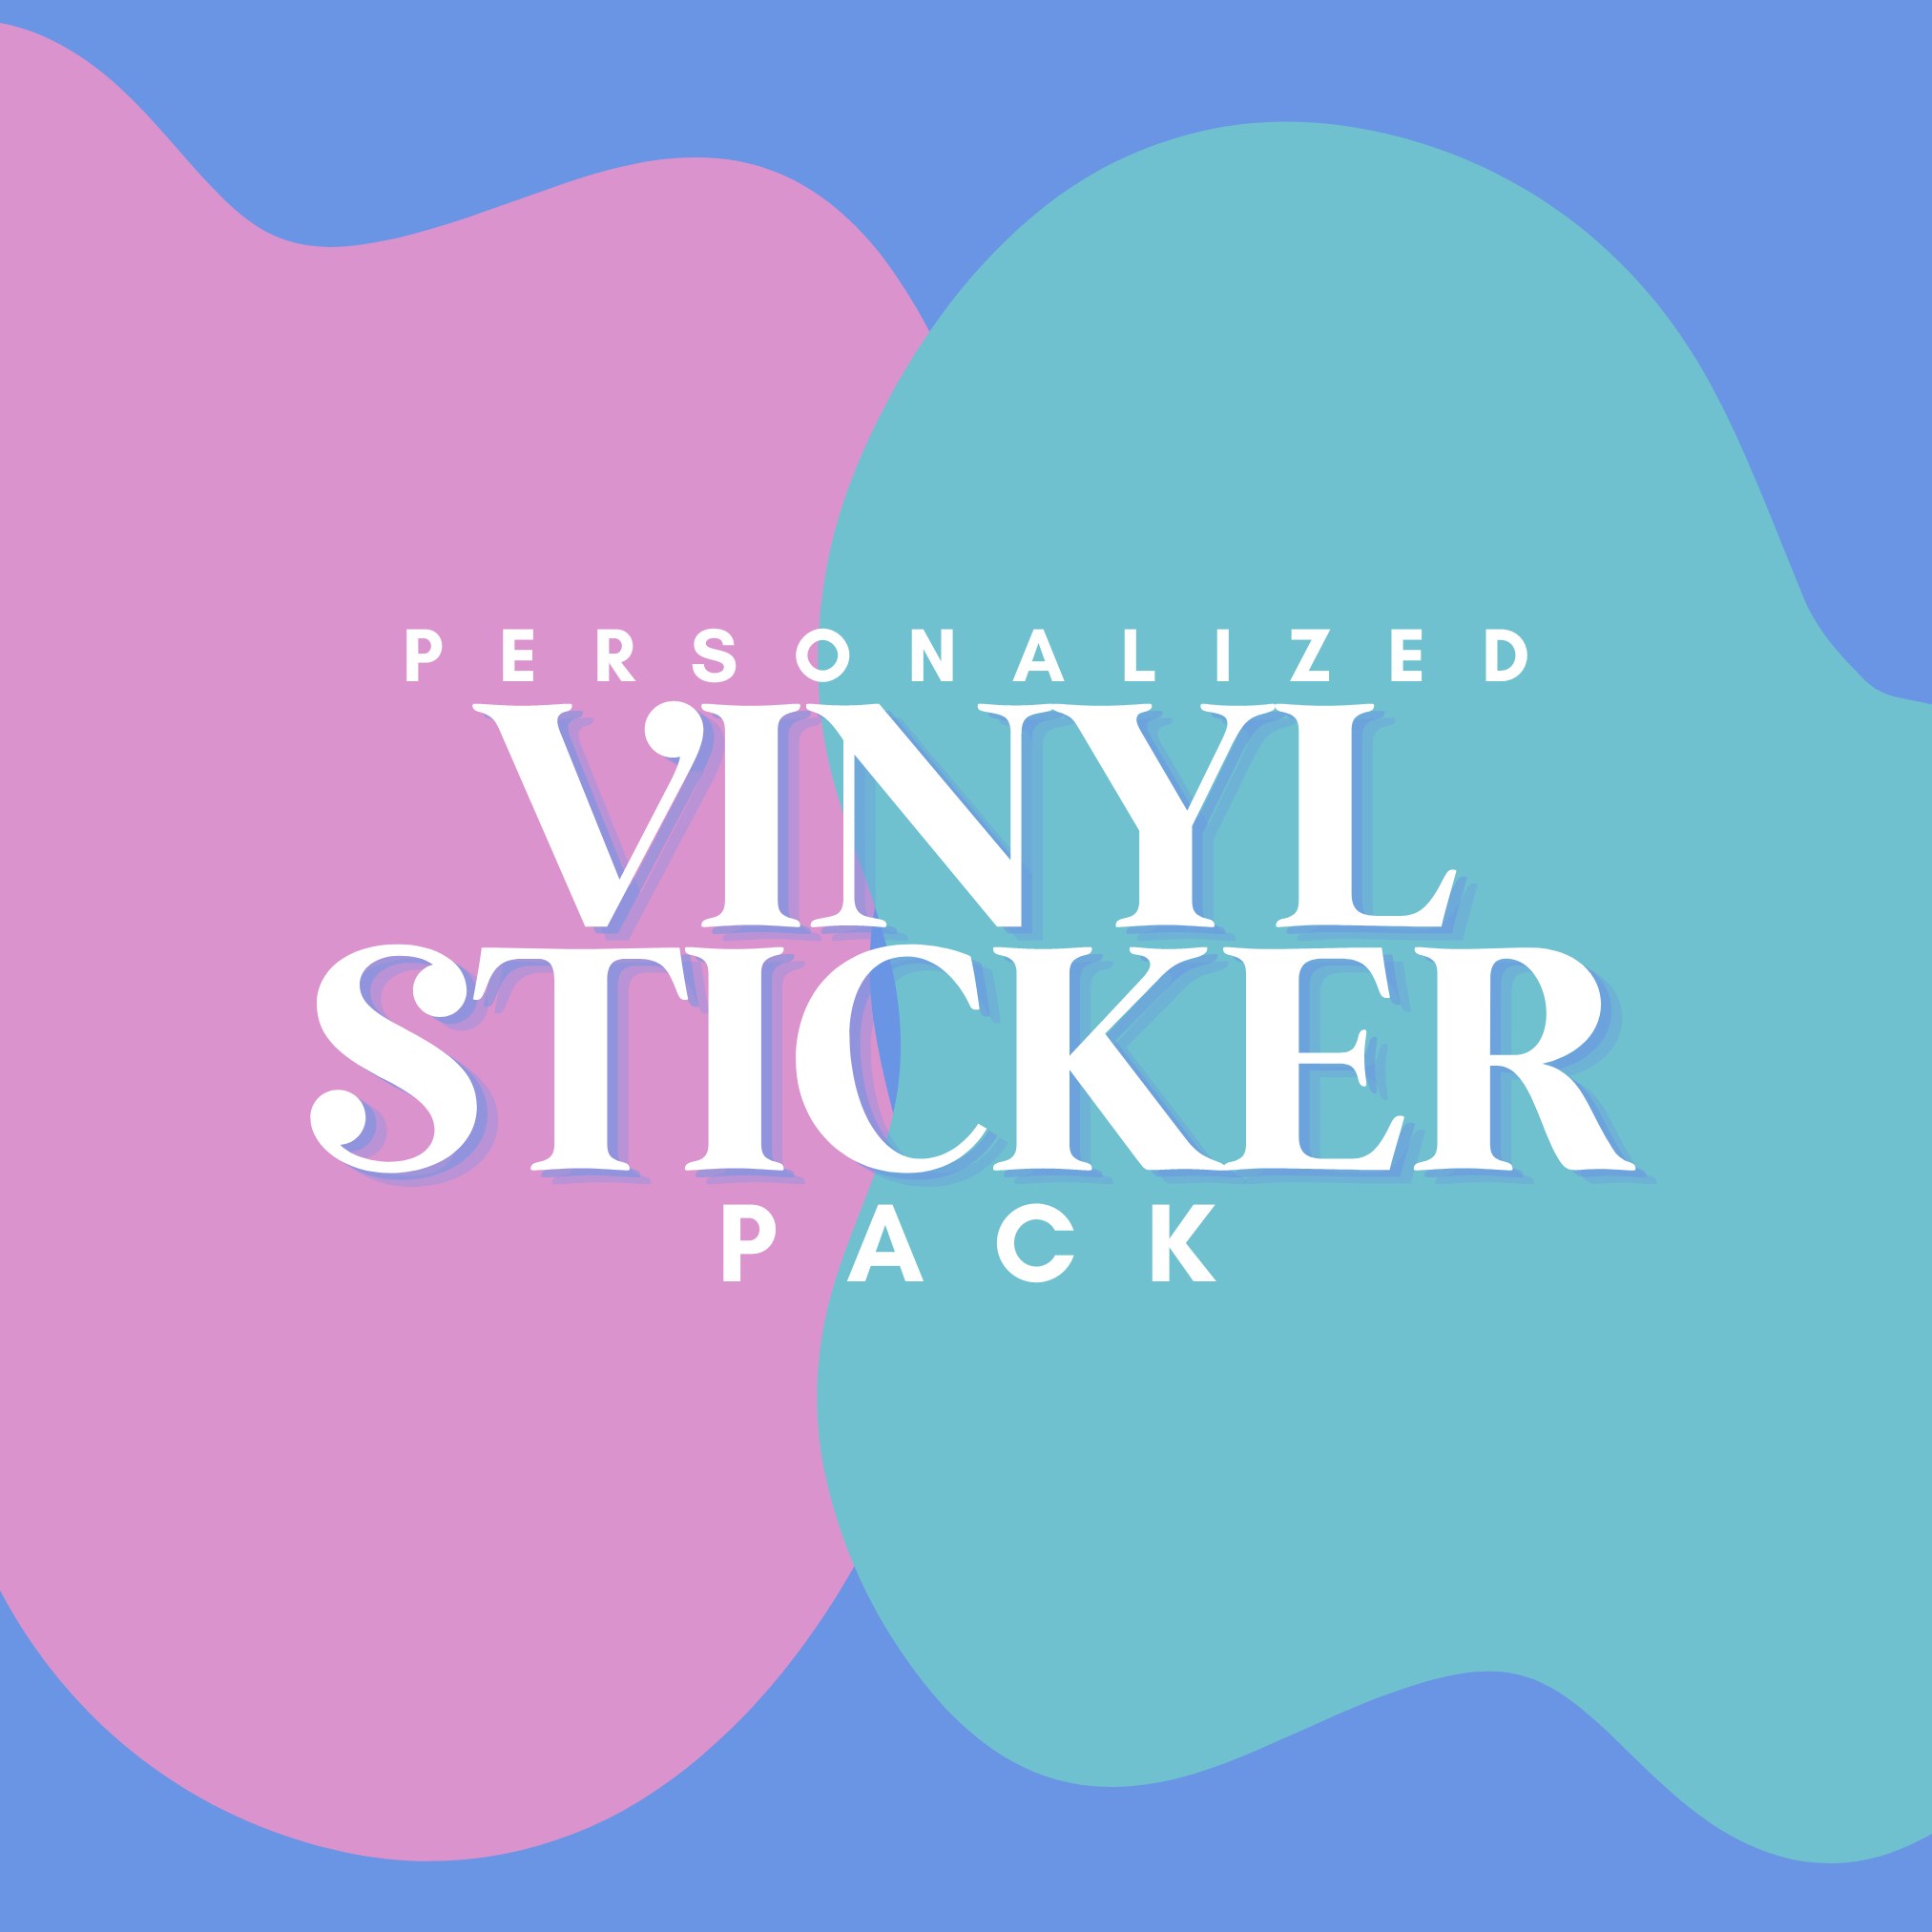 Custom Vinyl Sticker Packs For Stickers